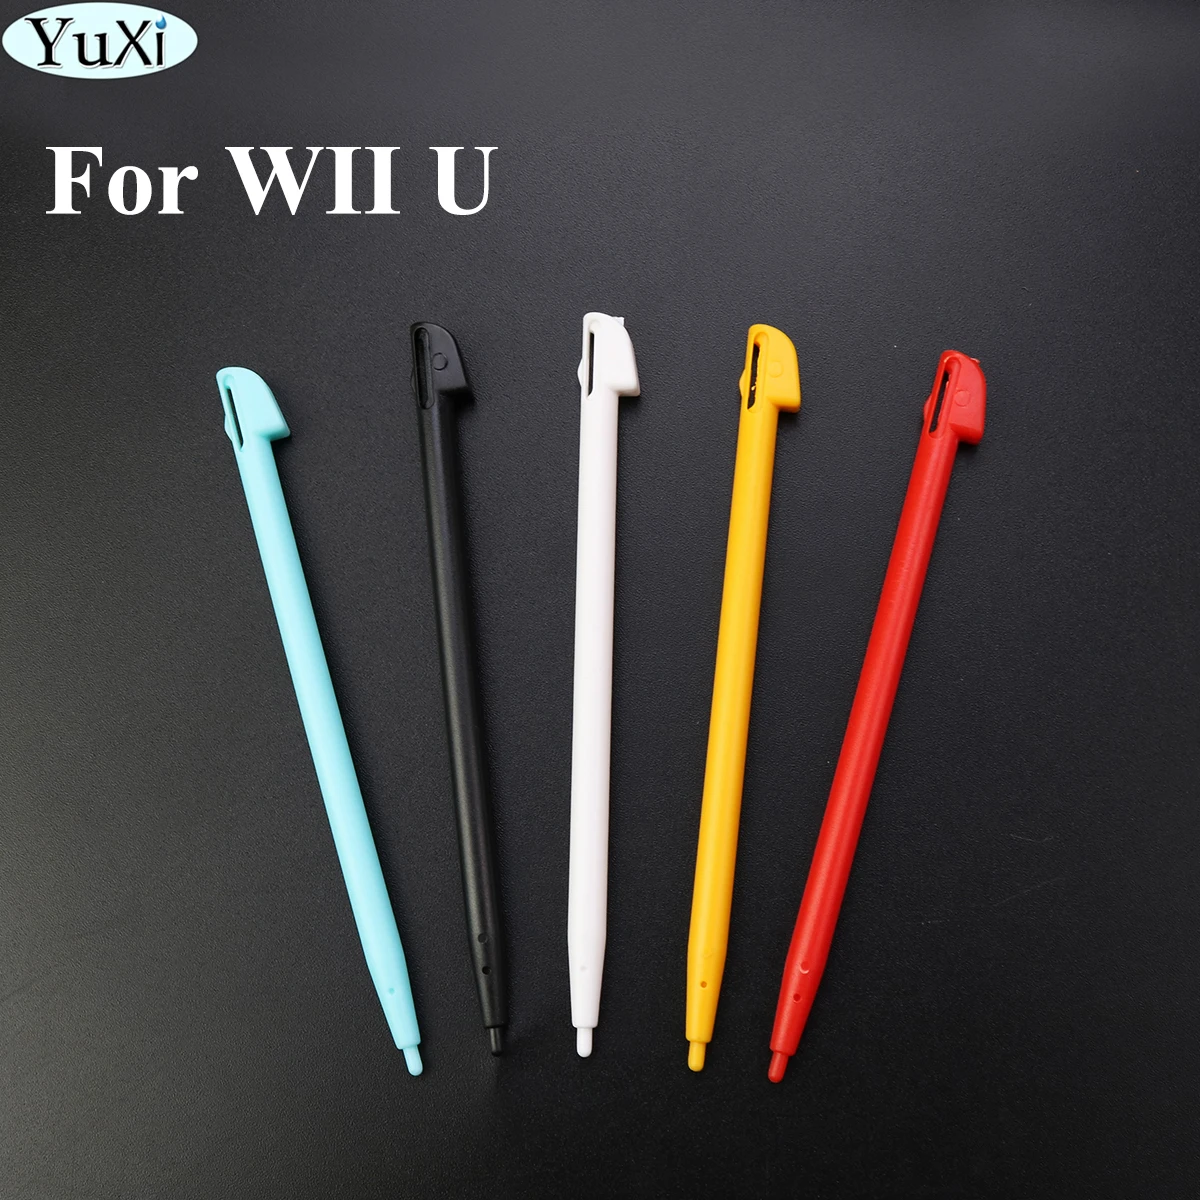 Op tijd vervaldatum Wanten Yuxi Touch For Wiiu Stylus Pen For Nintend Wii U New Plastic Game Video  Stylus Pen Game Accessories - Accessories - AliExpress